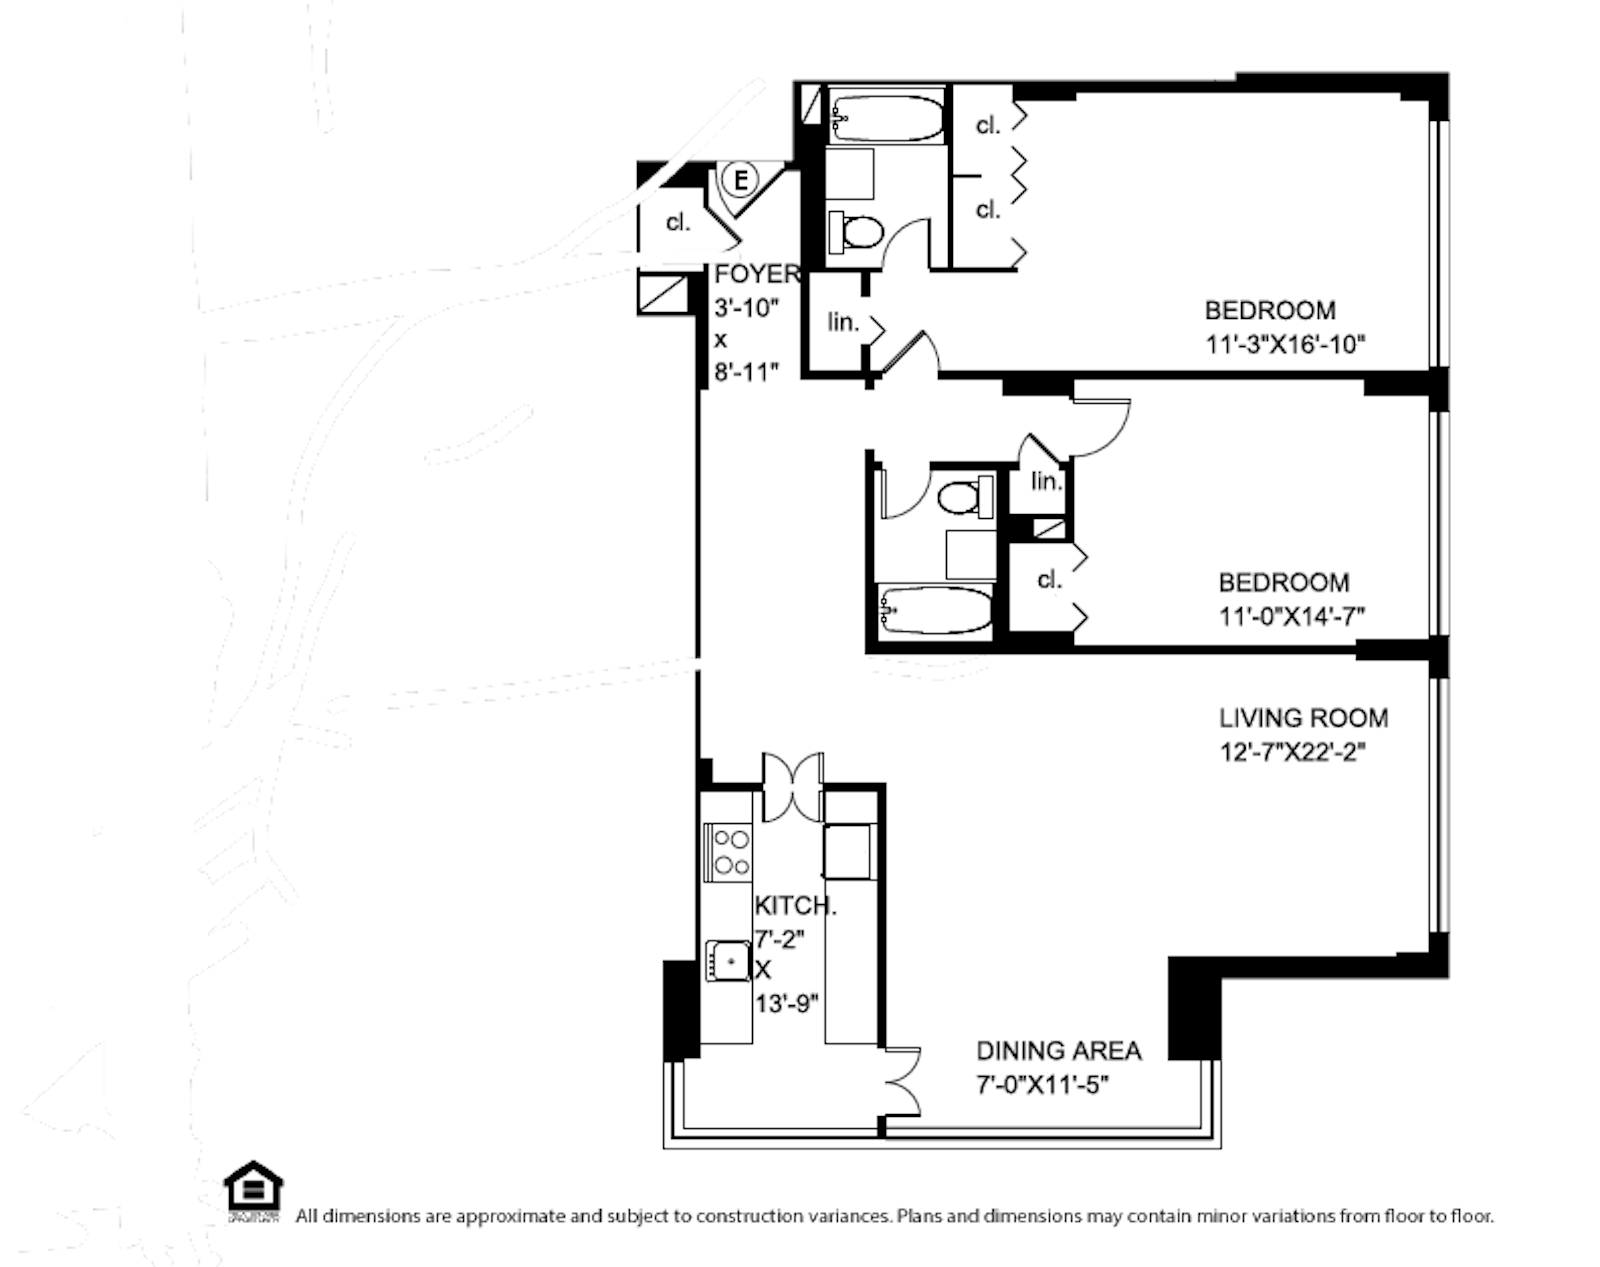 Floorplan for 445 East 80th Street, 3E